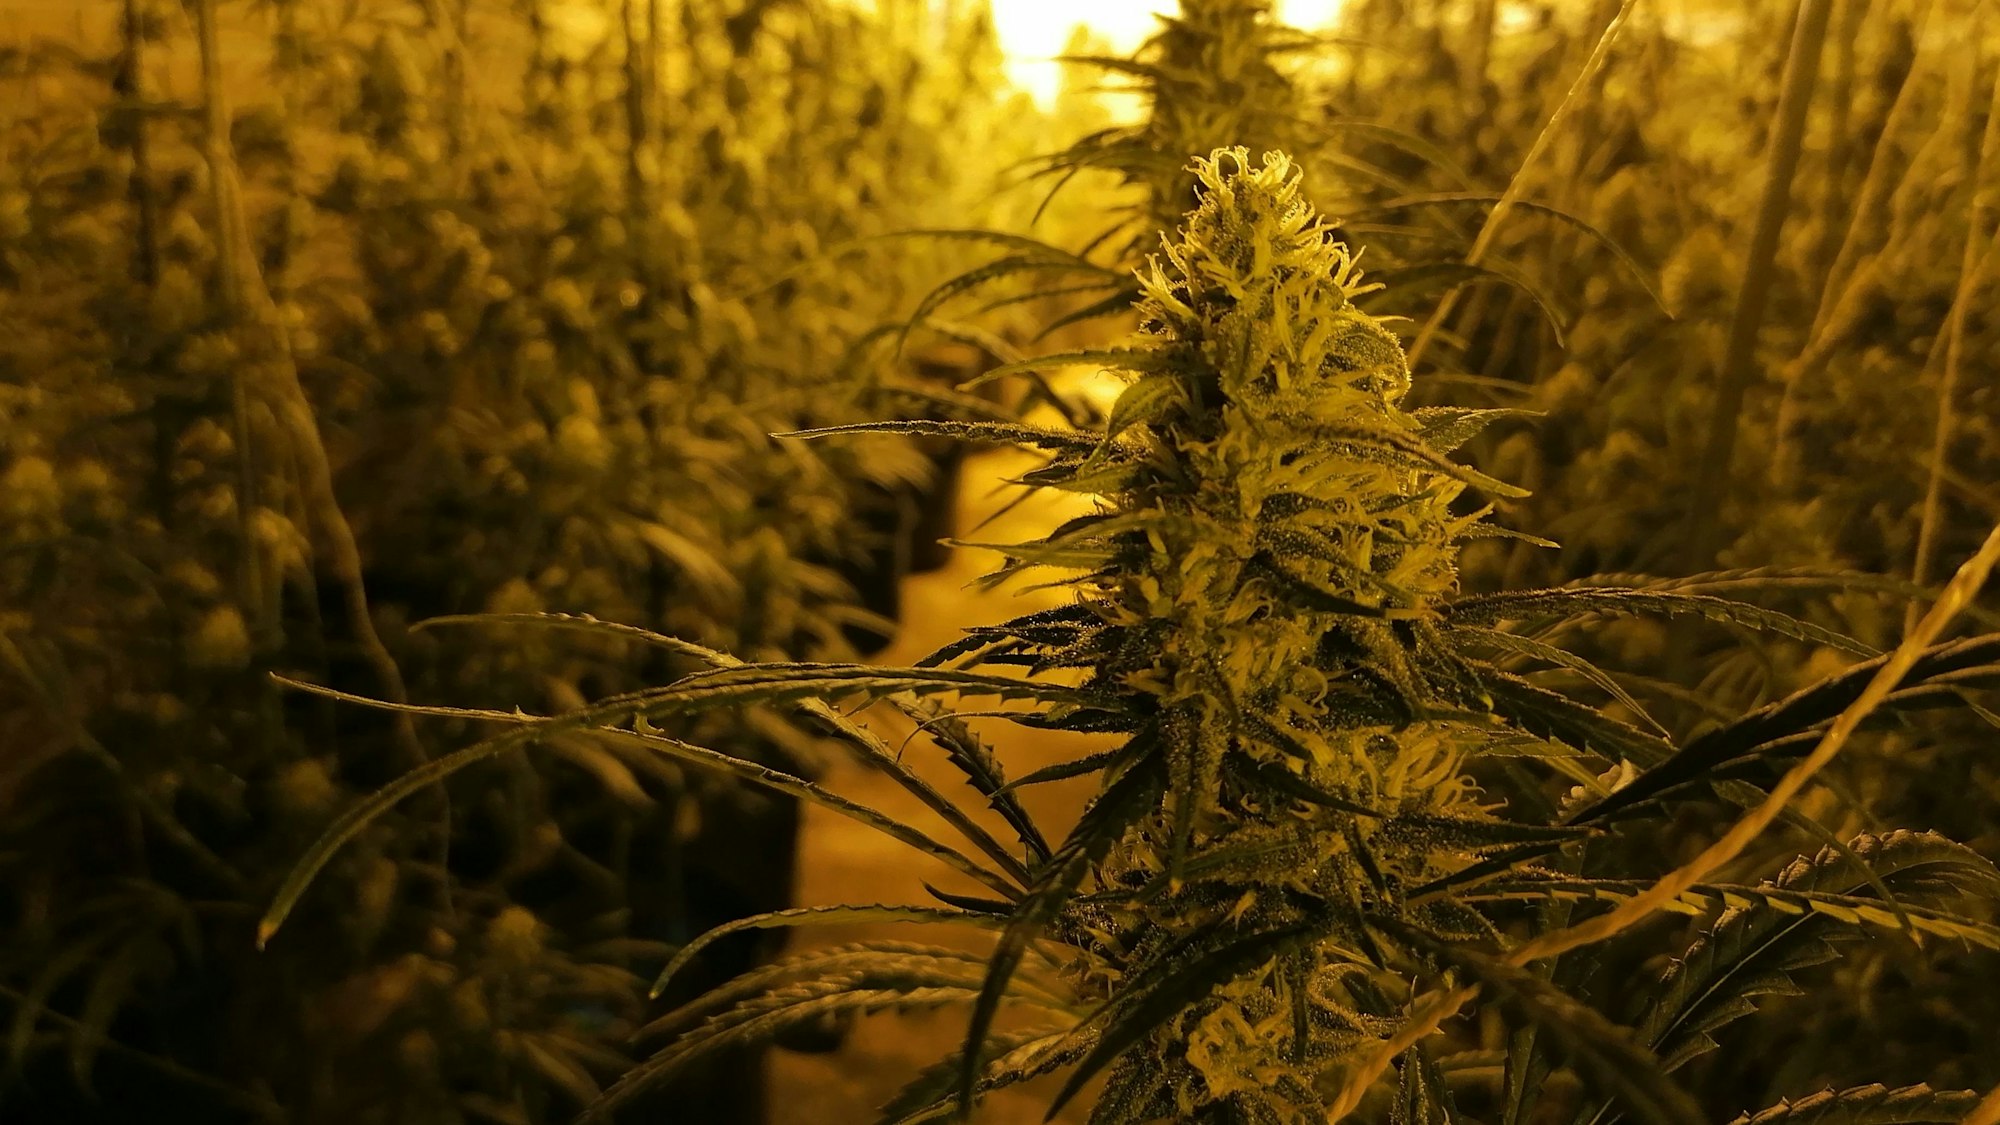 Cannabispflanzen in einem leerstehenden Hotel.